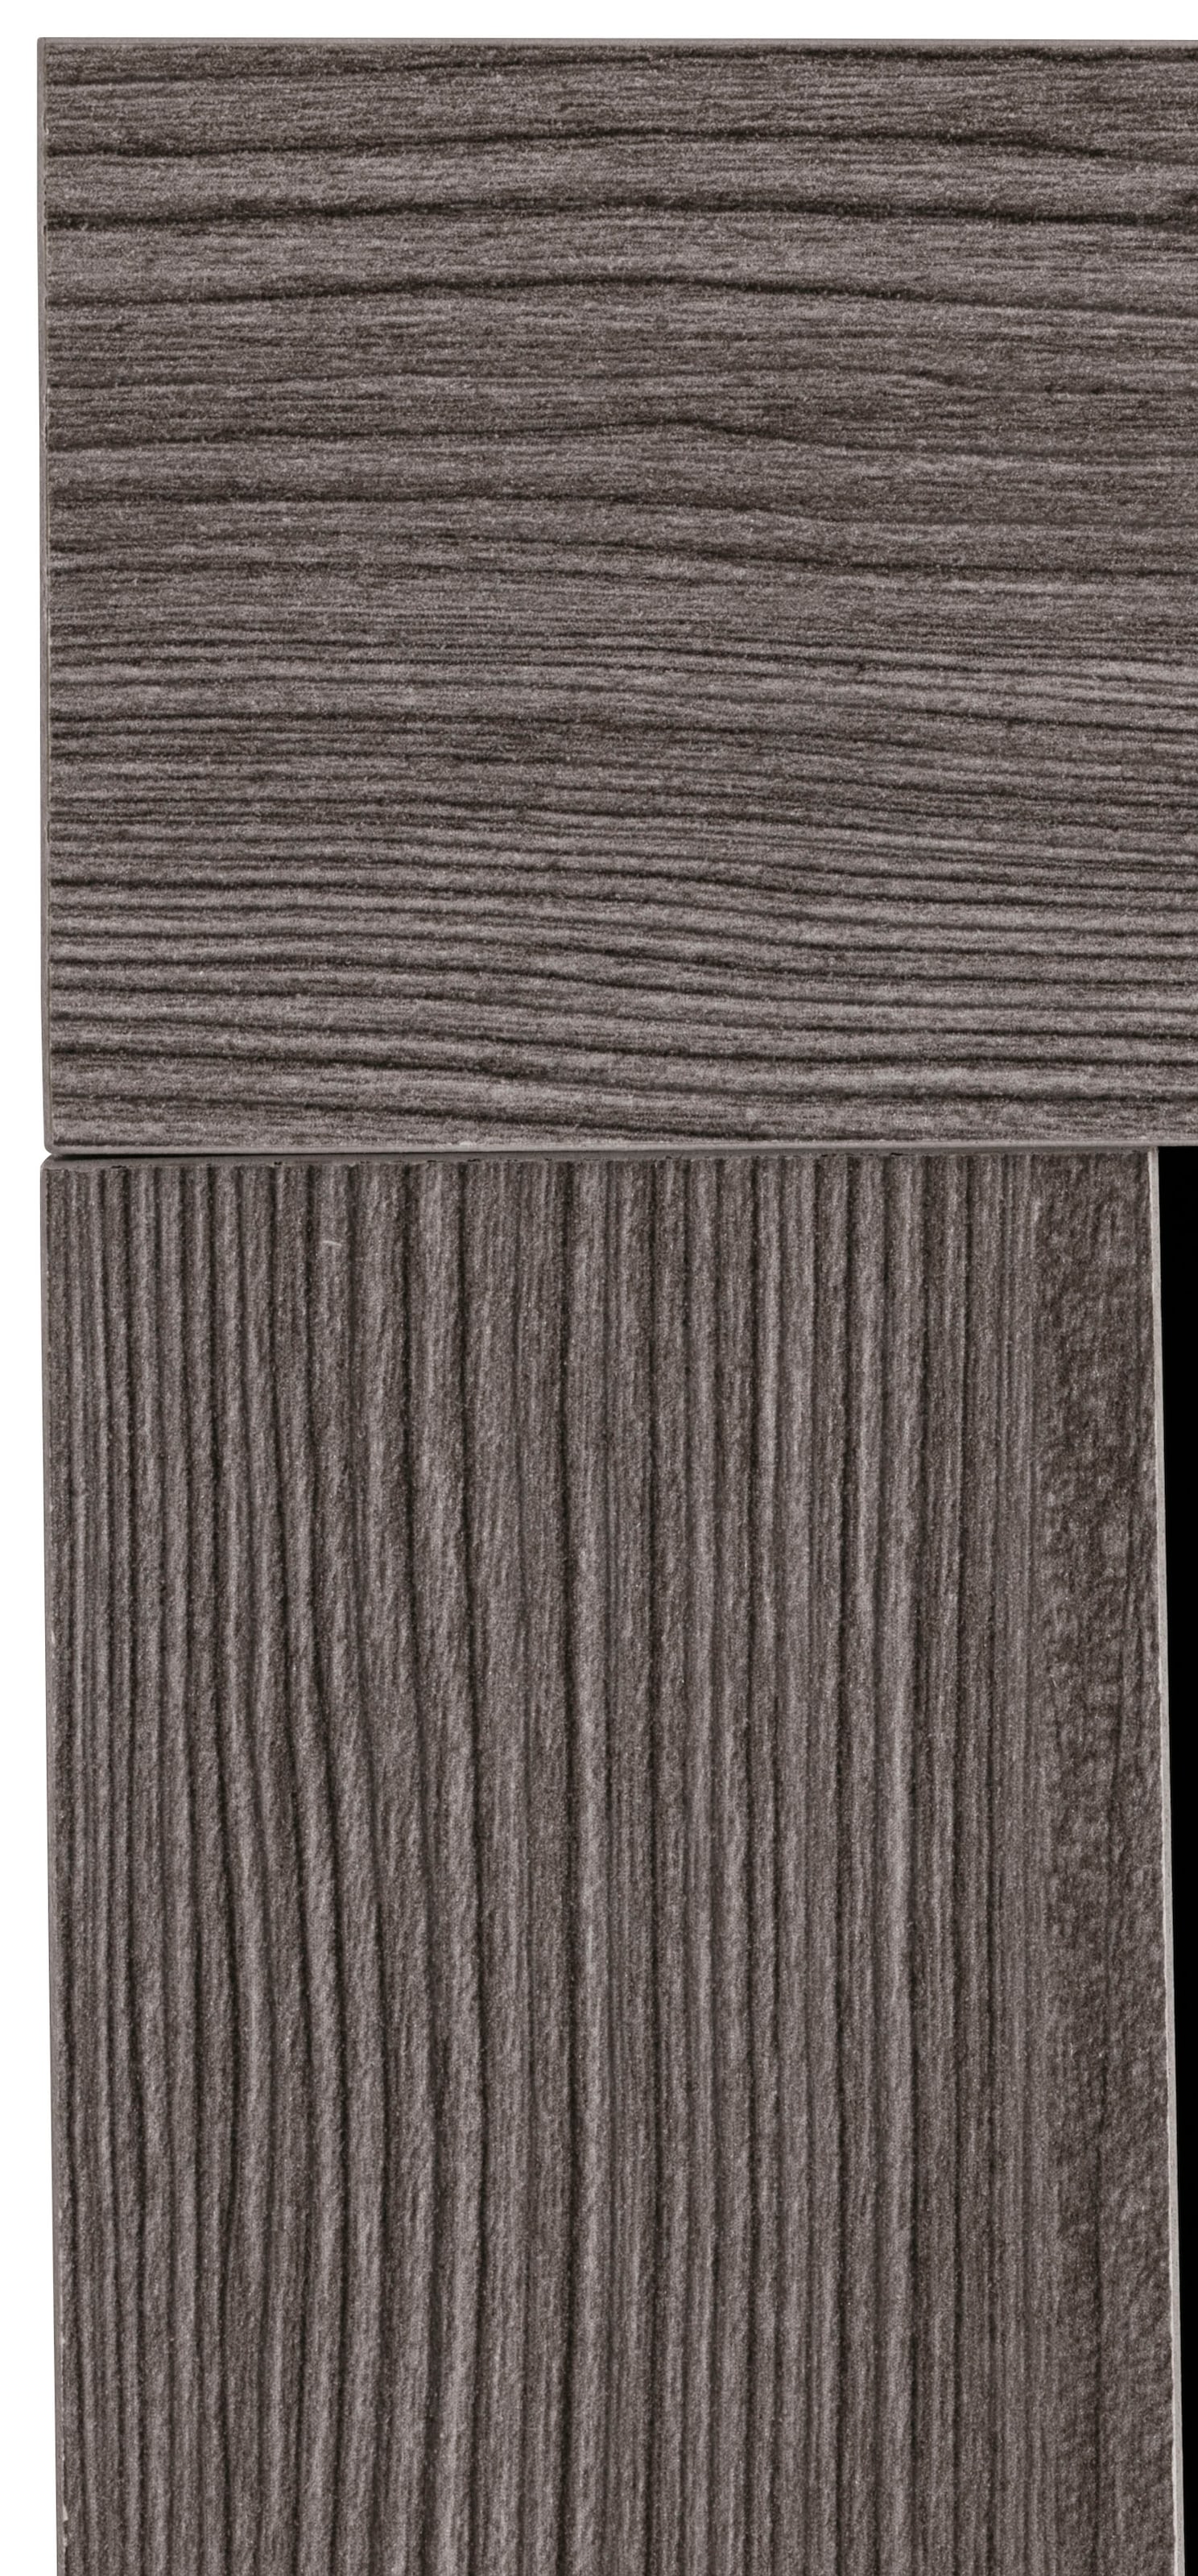 trendteam Hängeschrank »Miami«, mit Rahmenoptik in Holztönen, Breite 36 cm  bequem kaufen